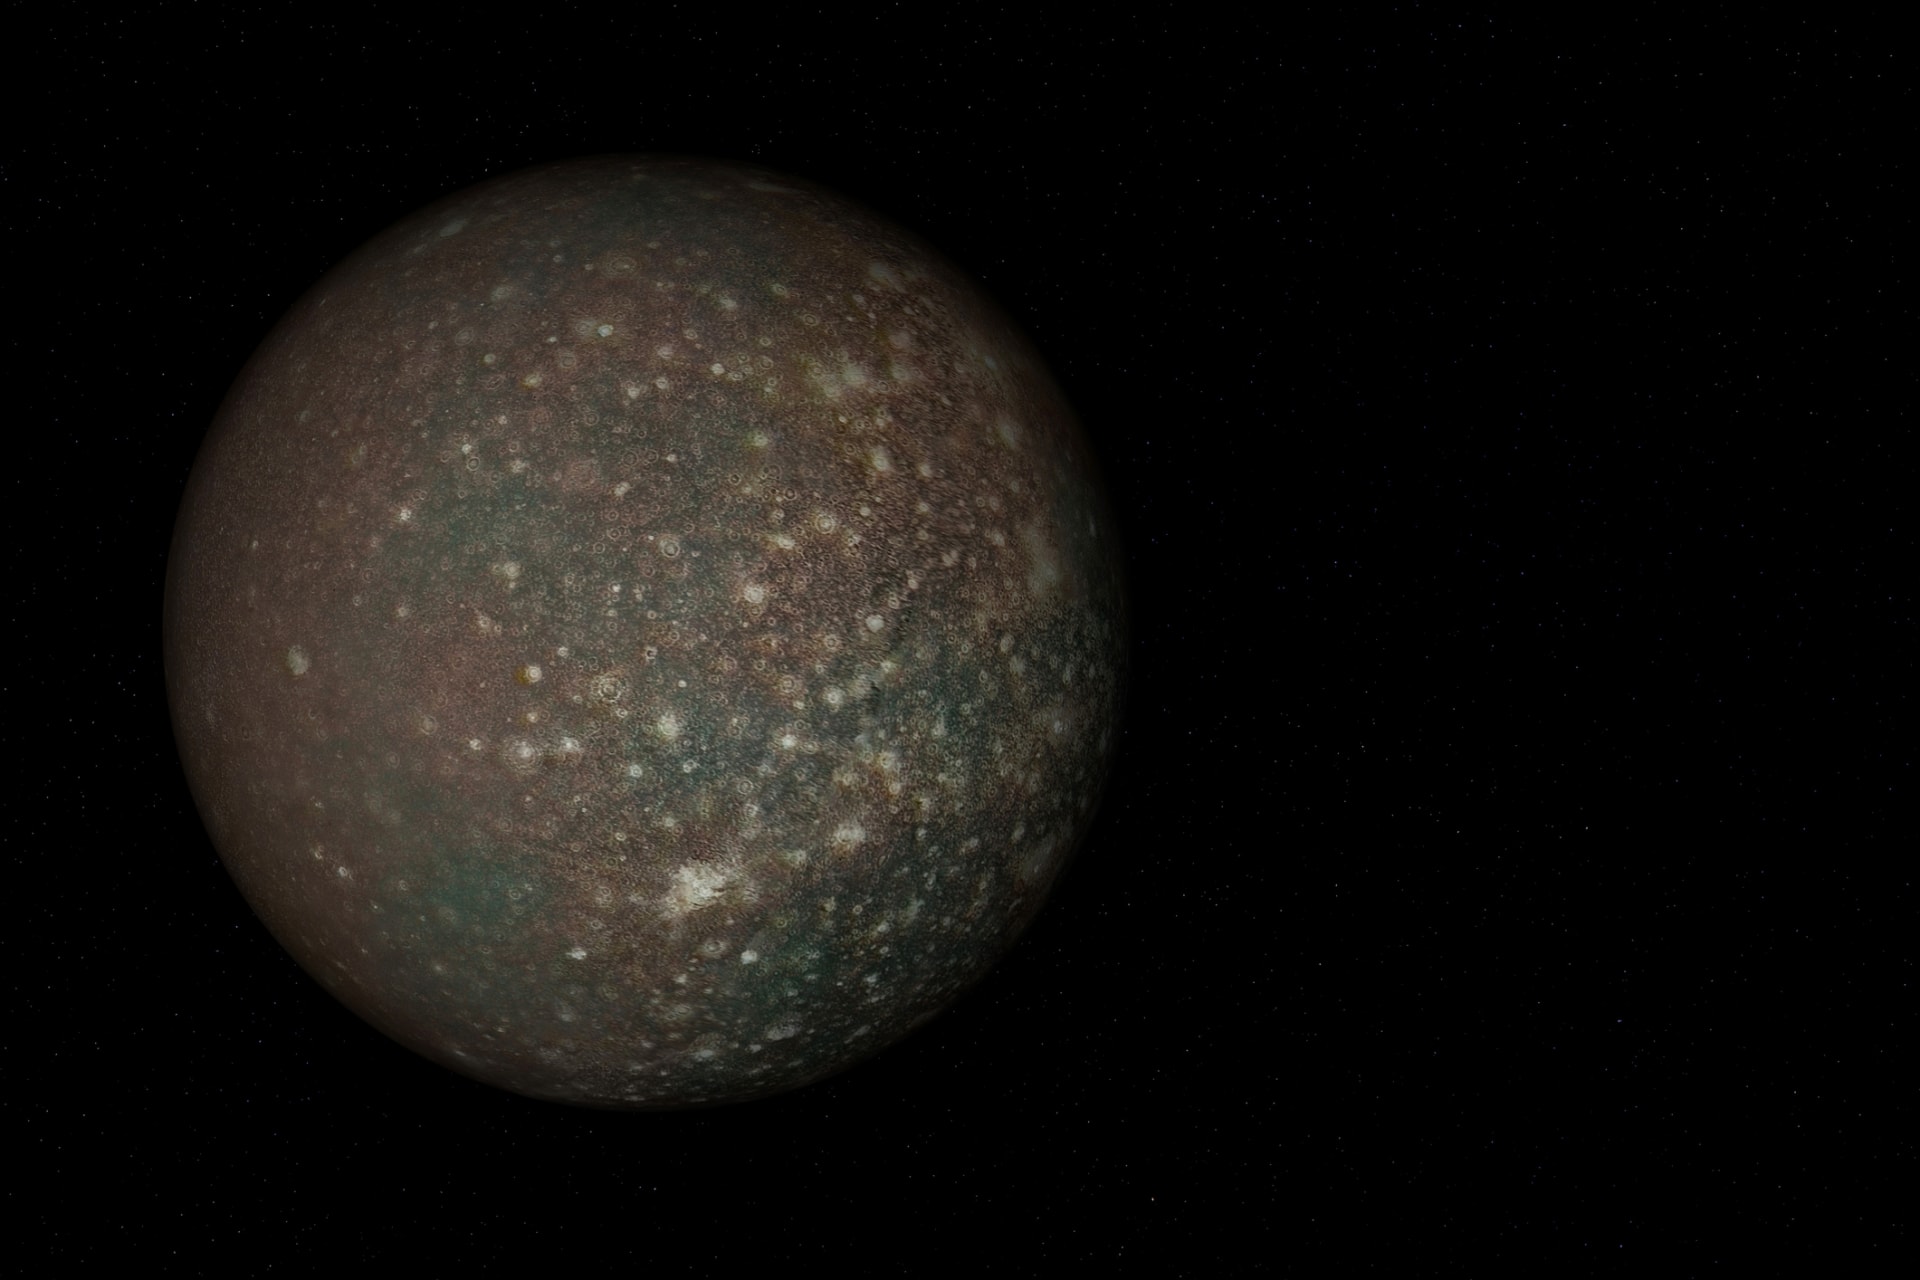 V budoucnu by chtěli vědci odhalit život i na měsíci Callisto